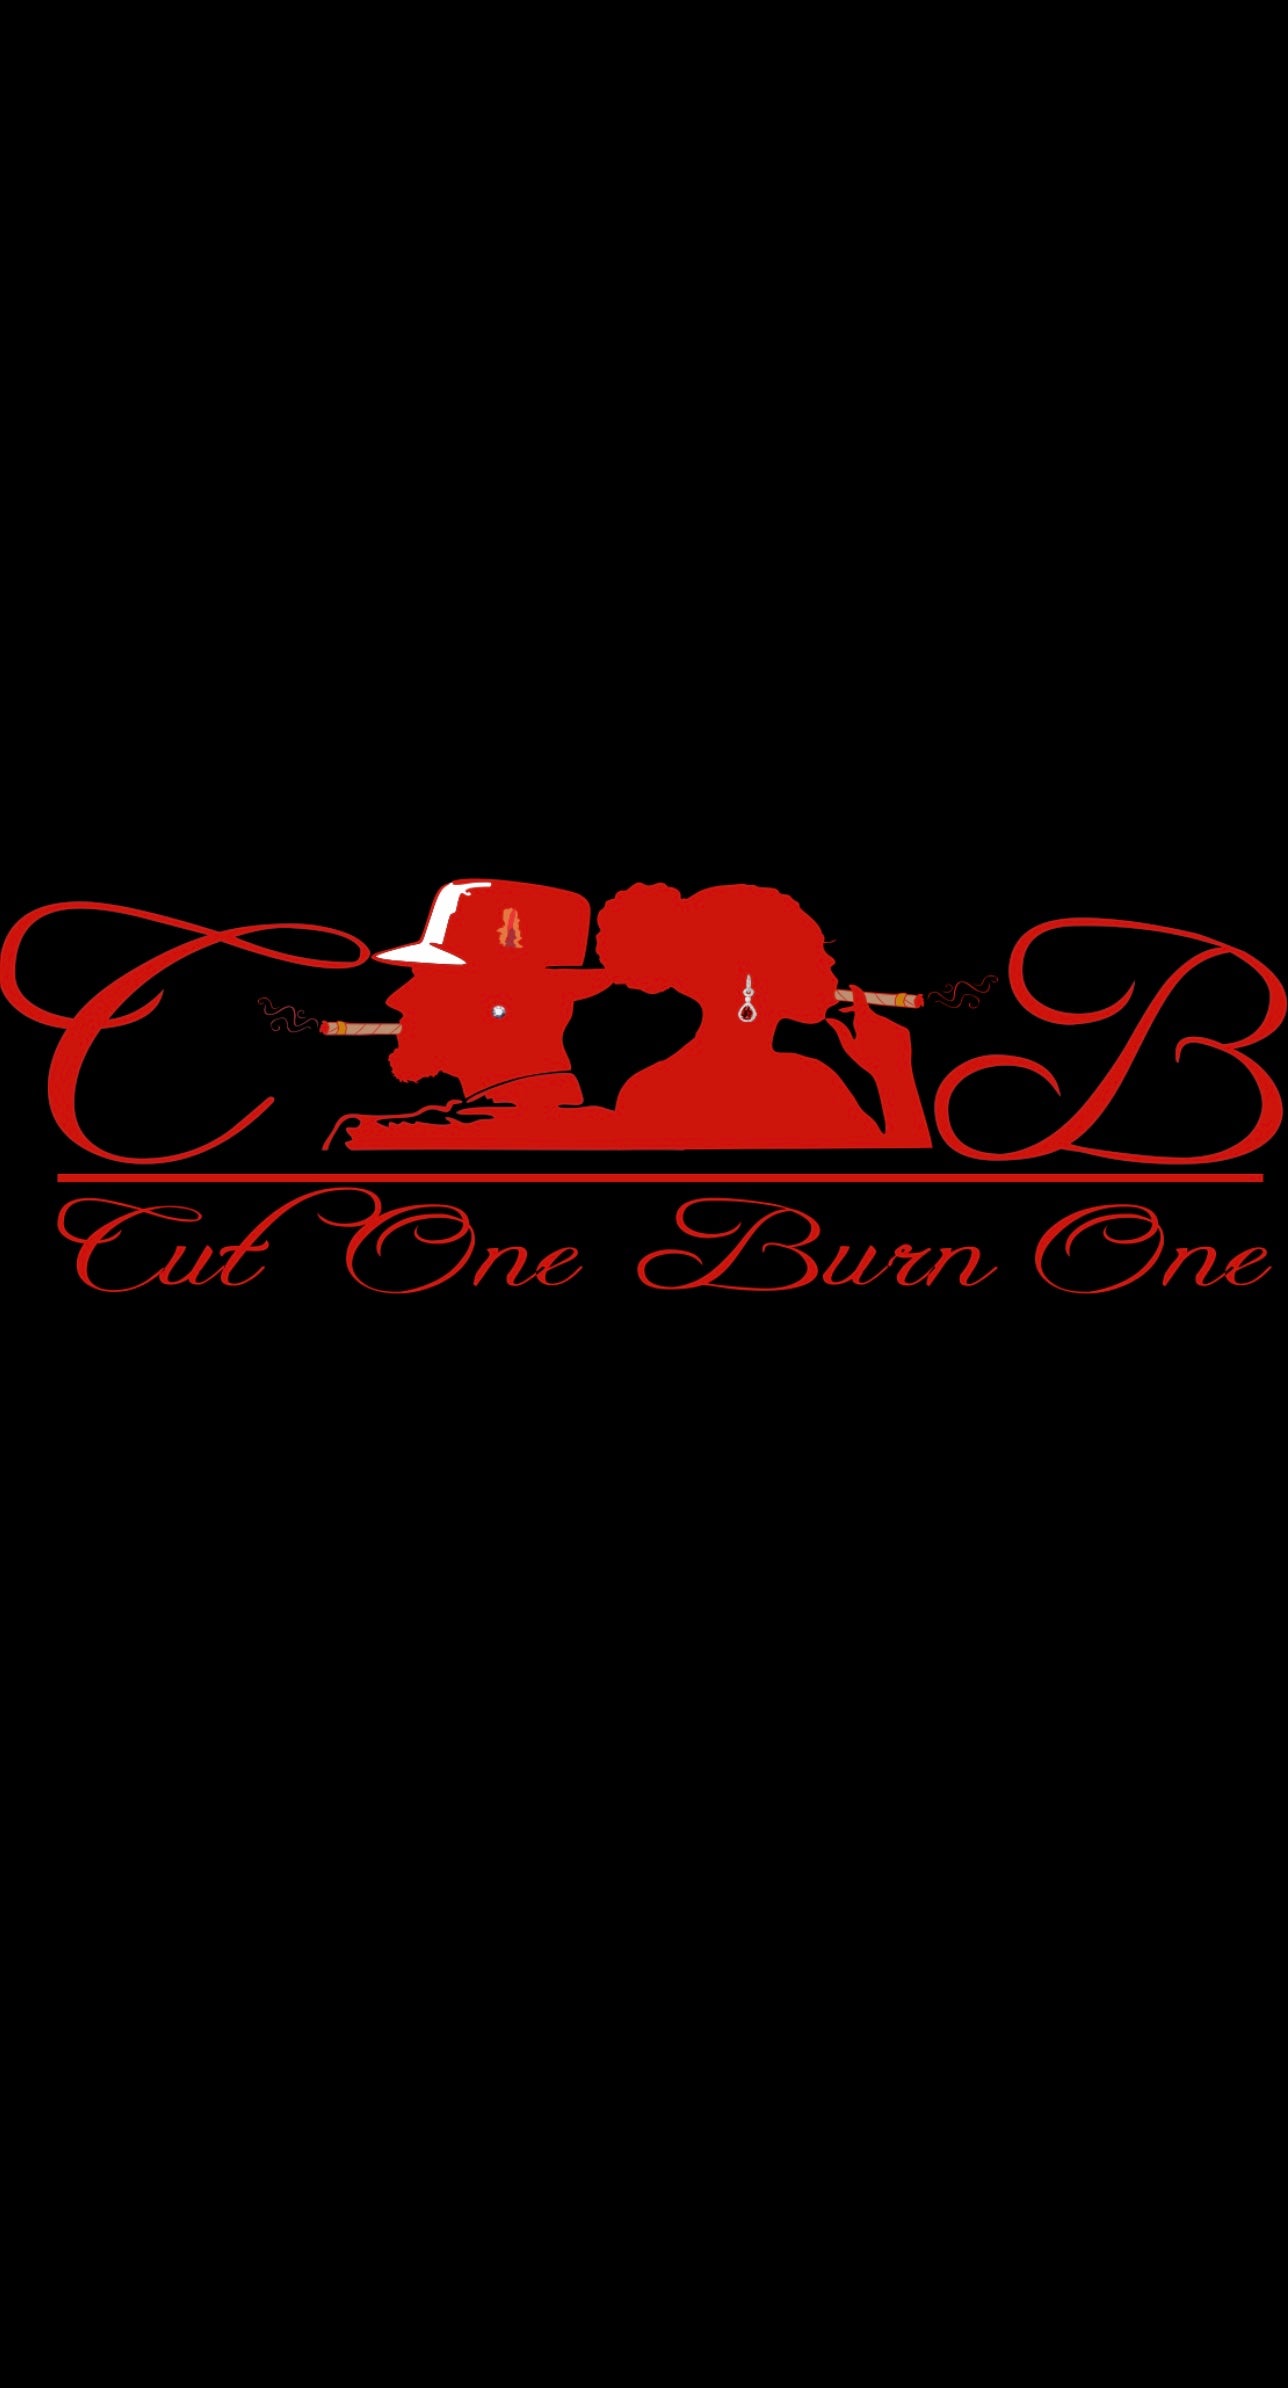 Cut One Burn One Logo’s Red & Black Tee’s